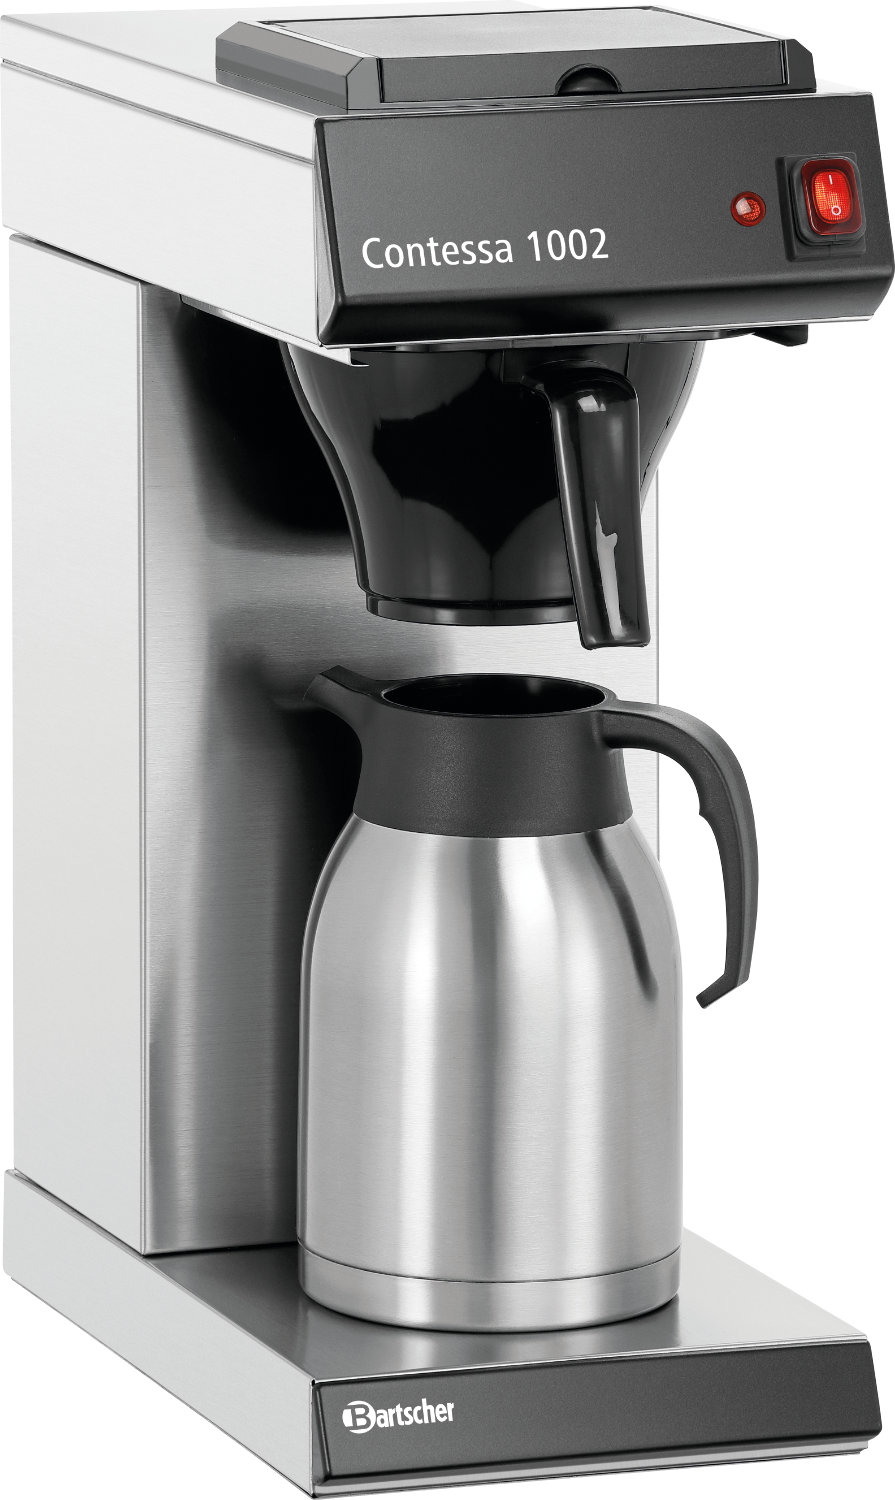  Bartscher Coffee machine Contessa 1002 